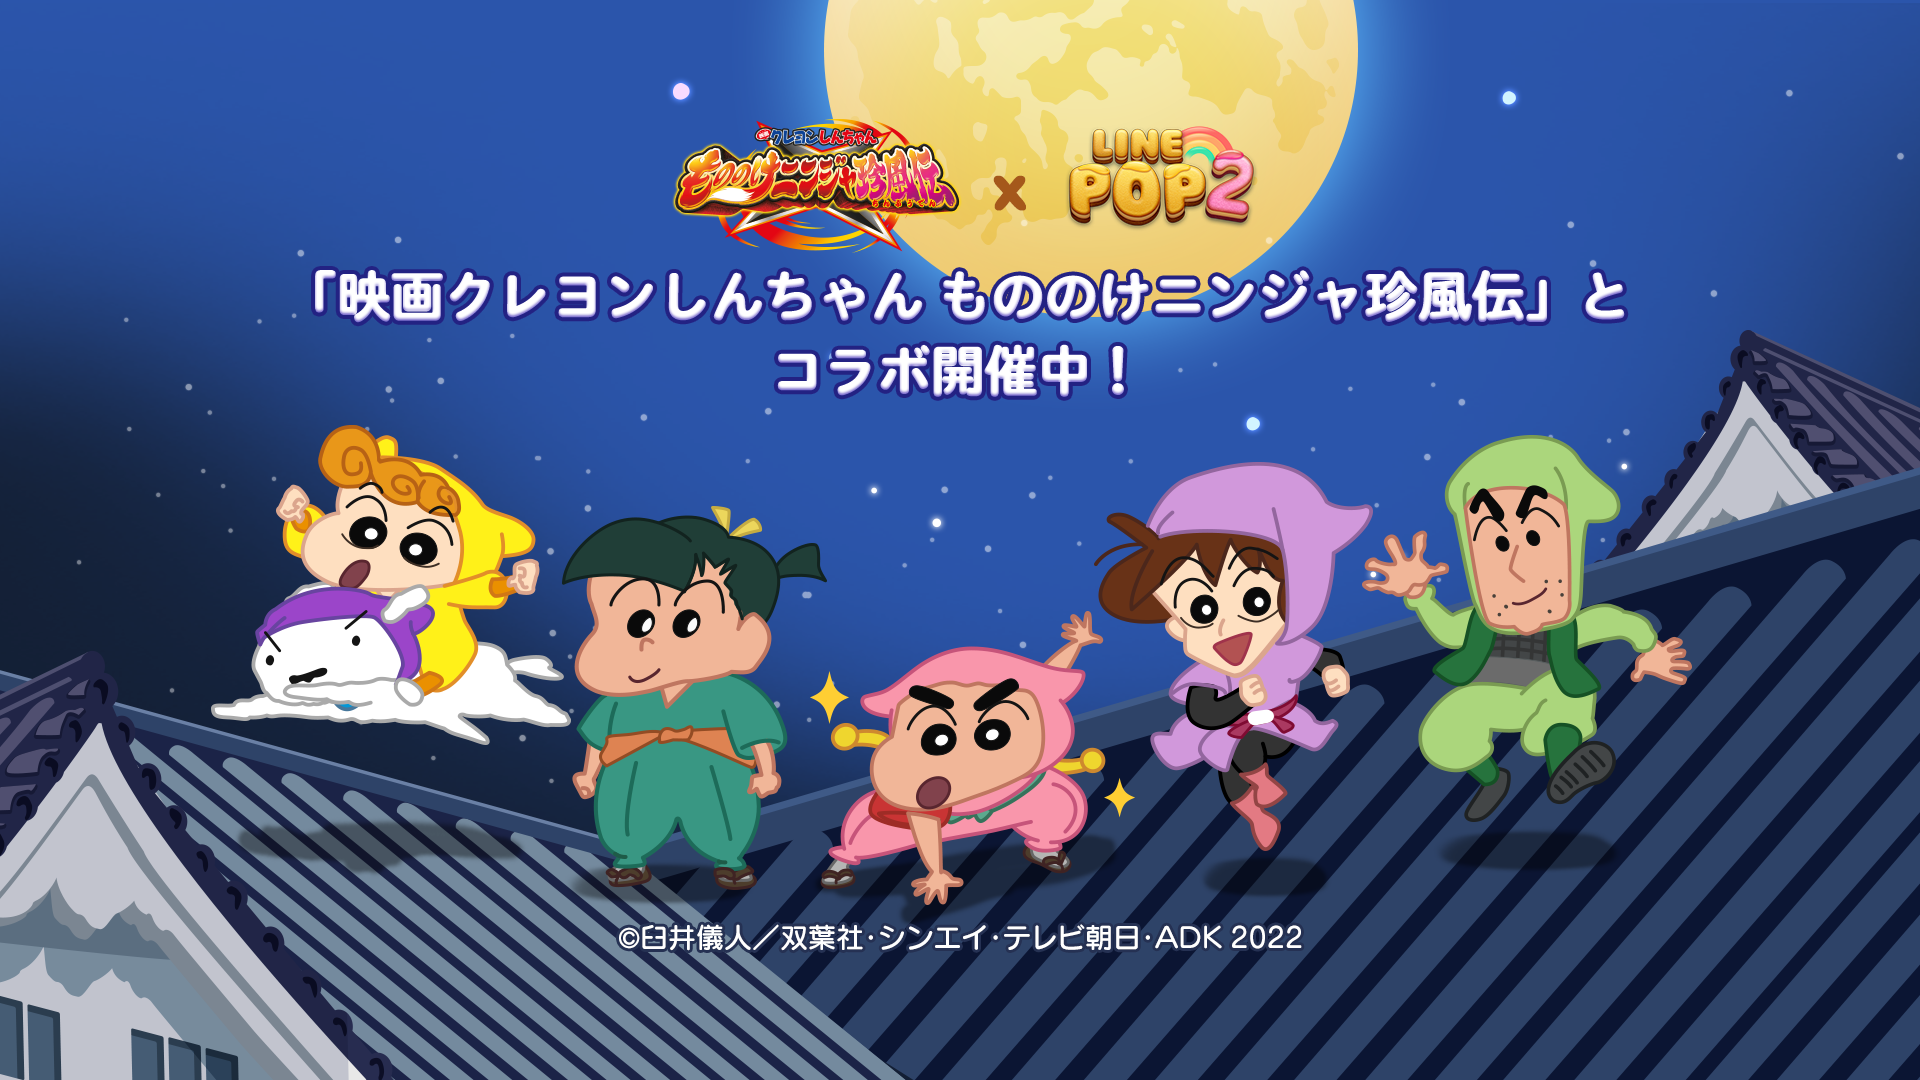 6角形パズルゲーム Line Pop2 映画クレヨンしんちゃん とコラボレーション開始 Line株式会社のプレスリリース